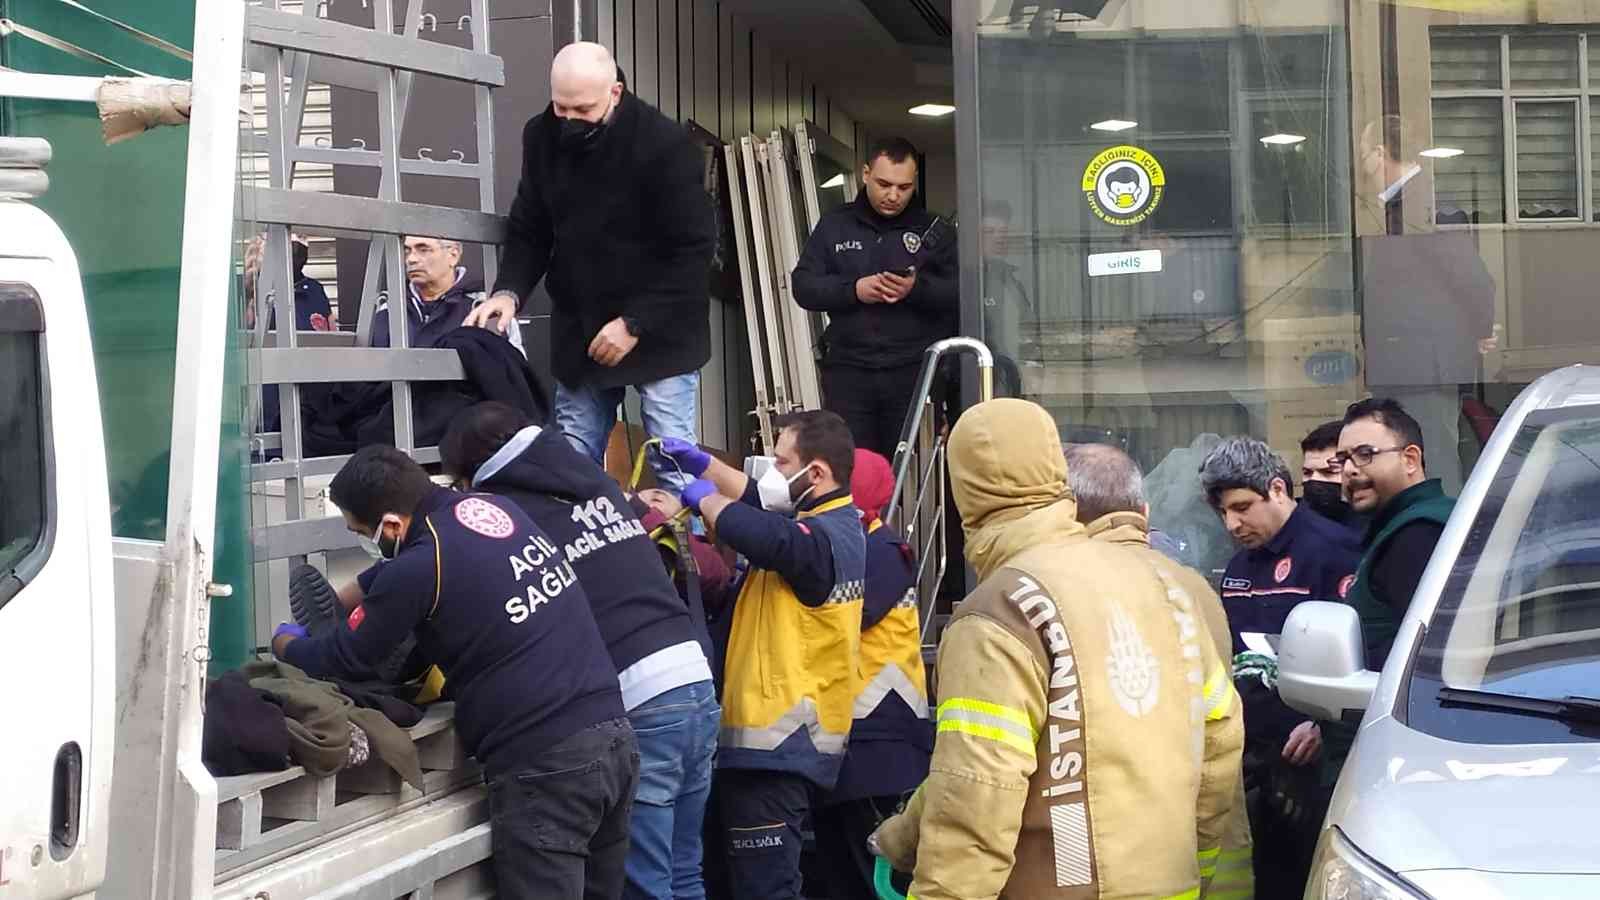 Kamyonetteki camlar üzerlerine devrildi: 2 işçi yaralandı #istanbul